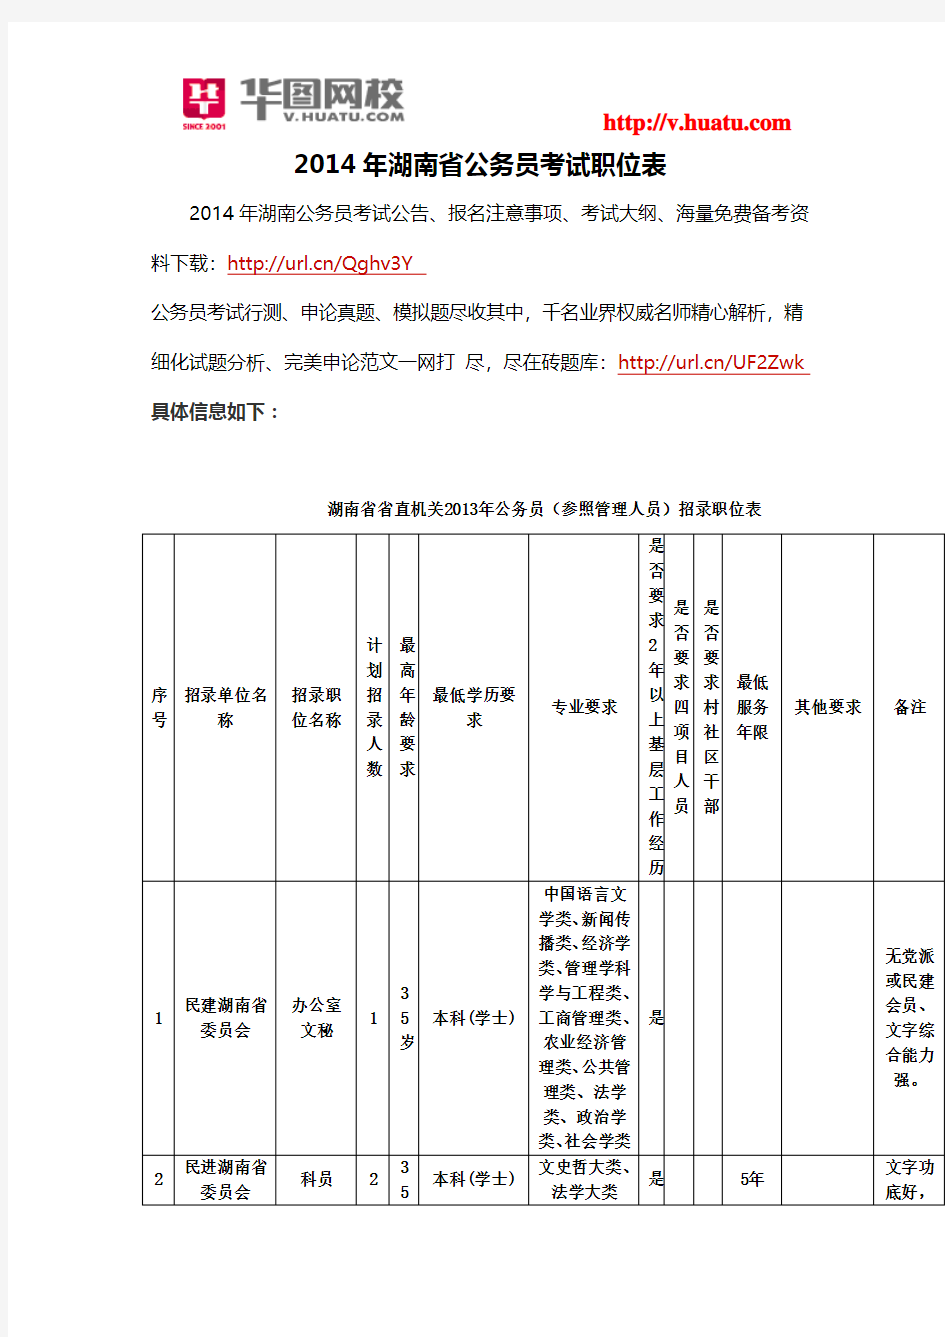 2014年湖南省公务员考试职位表